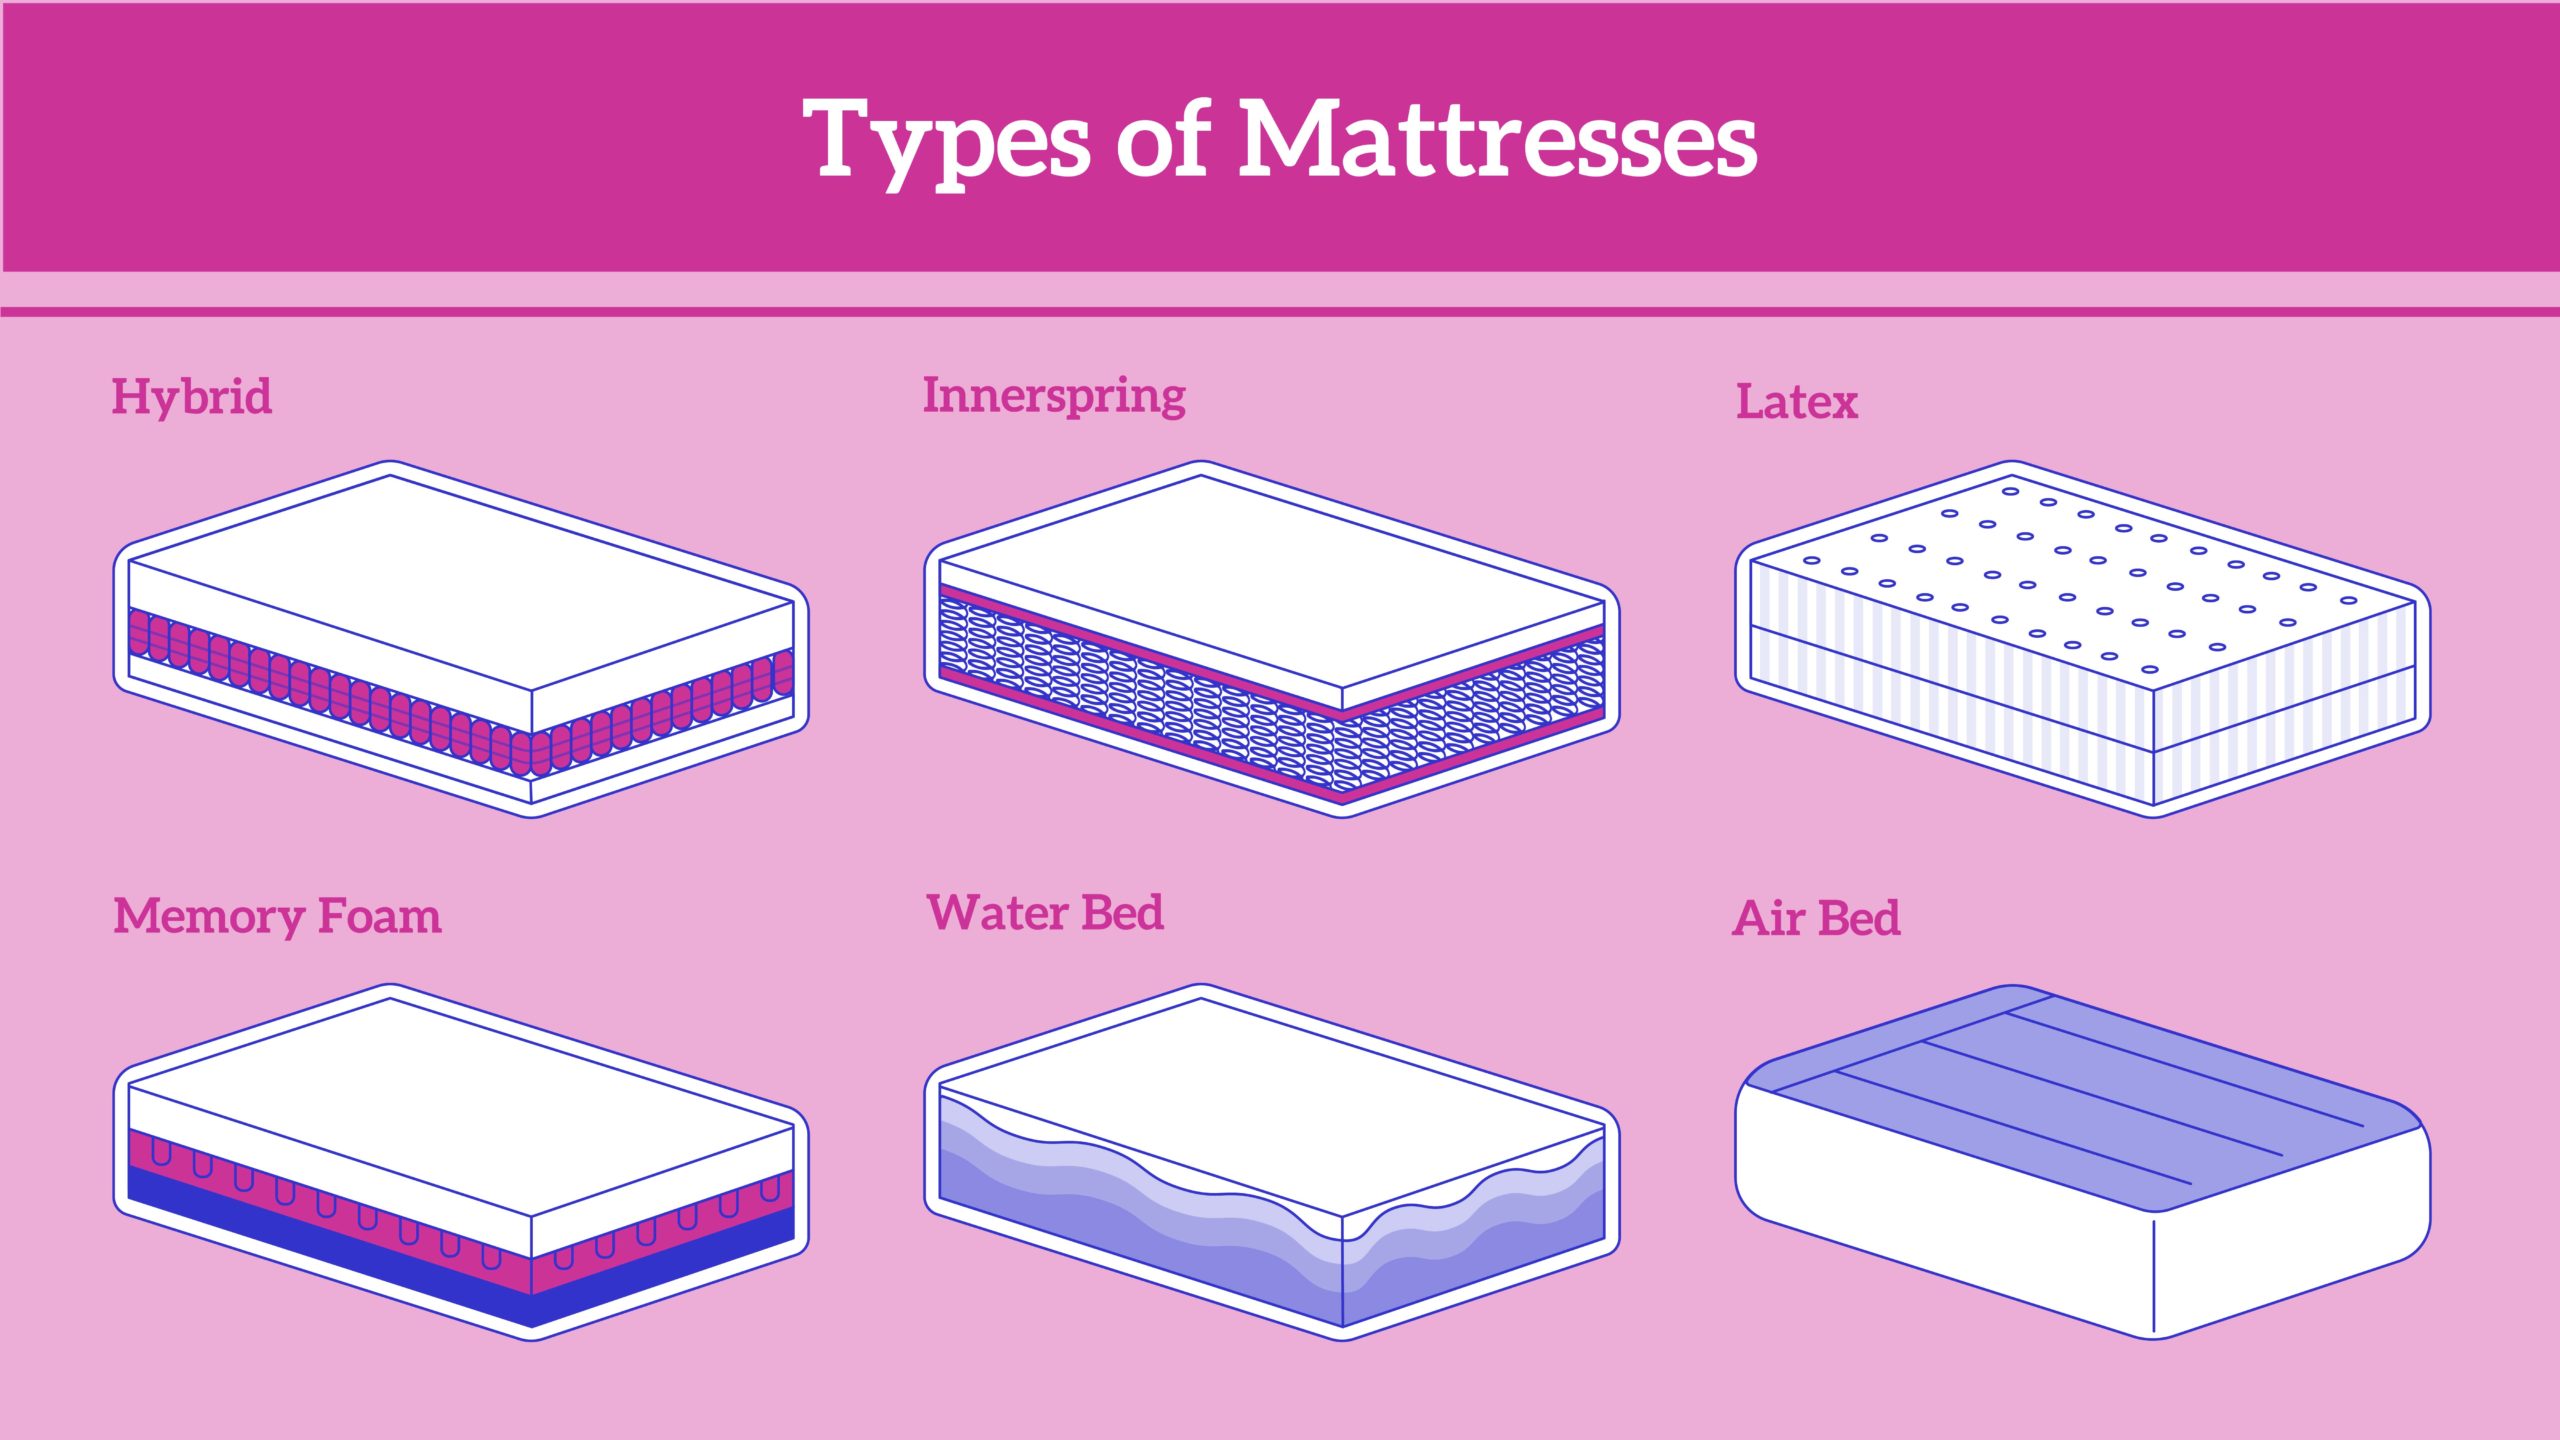 Mattress Types